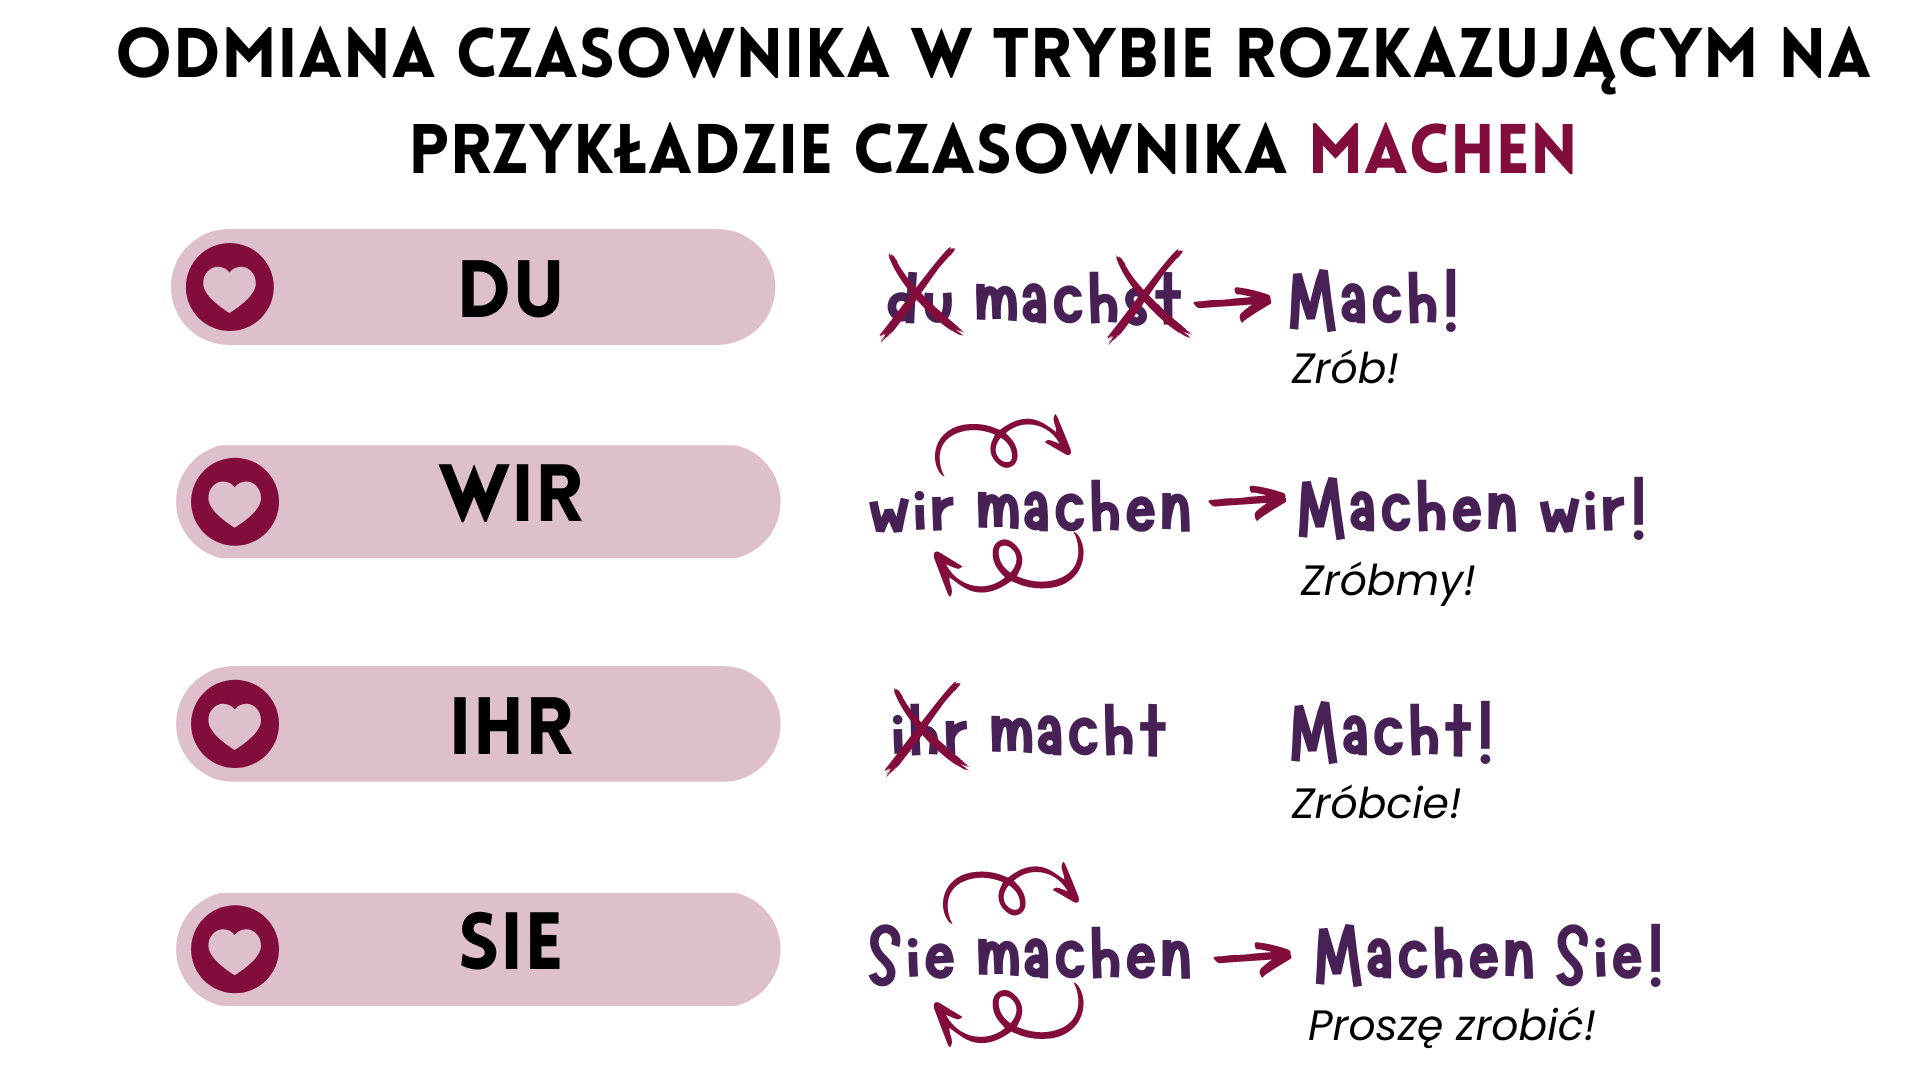 Tryb Rozkazujący Po Niemiecku Tryb rozkazujący w języku niemieckim - zasady tworzenia + przykłady